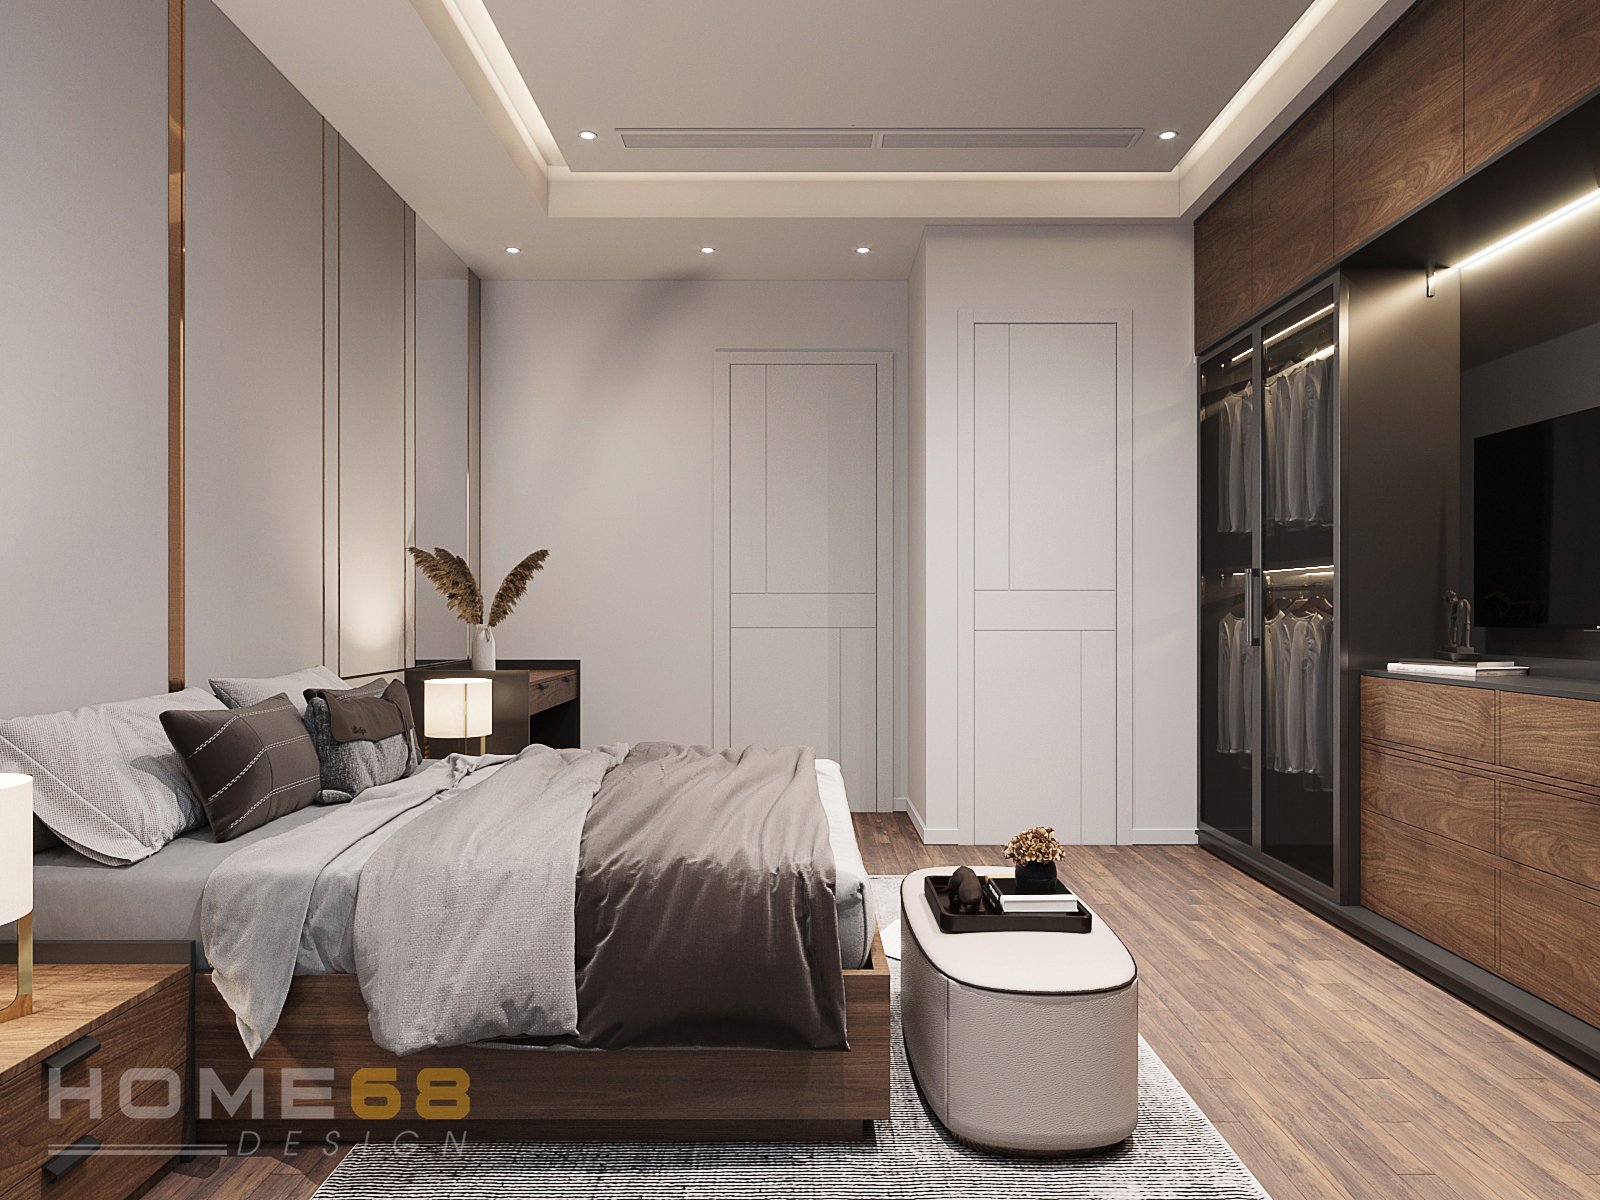 Thiết kế nội thất phòng ngủ masrer hiện đại, đằng cấp- HOME68